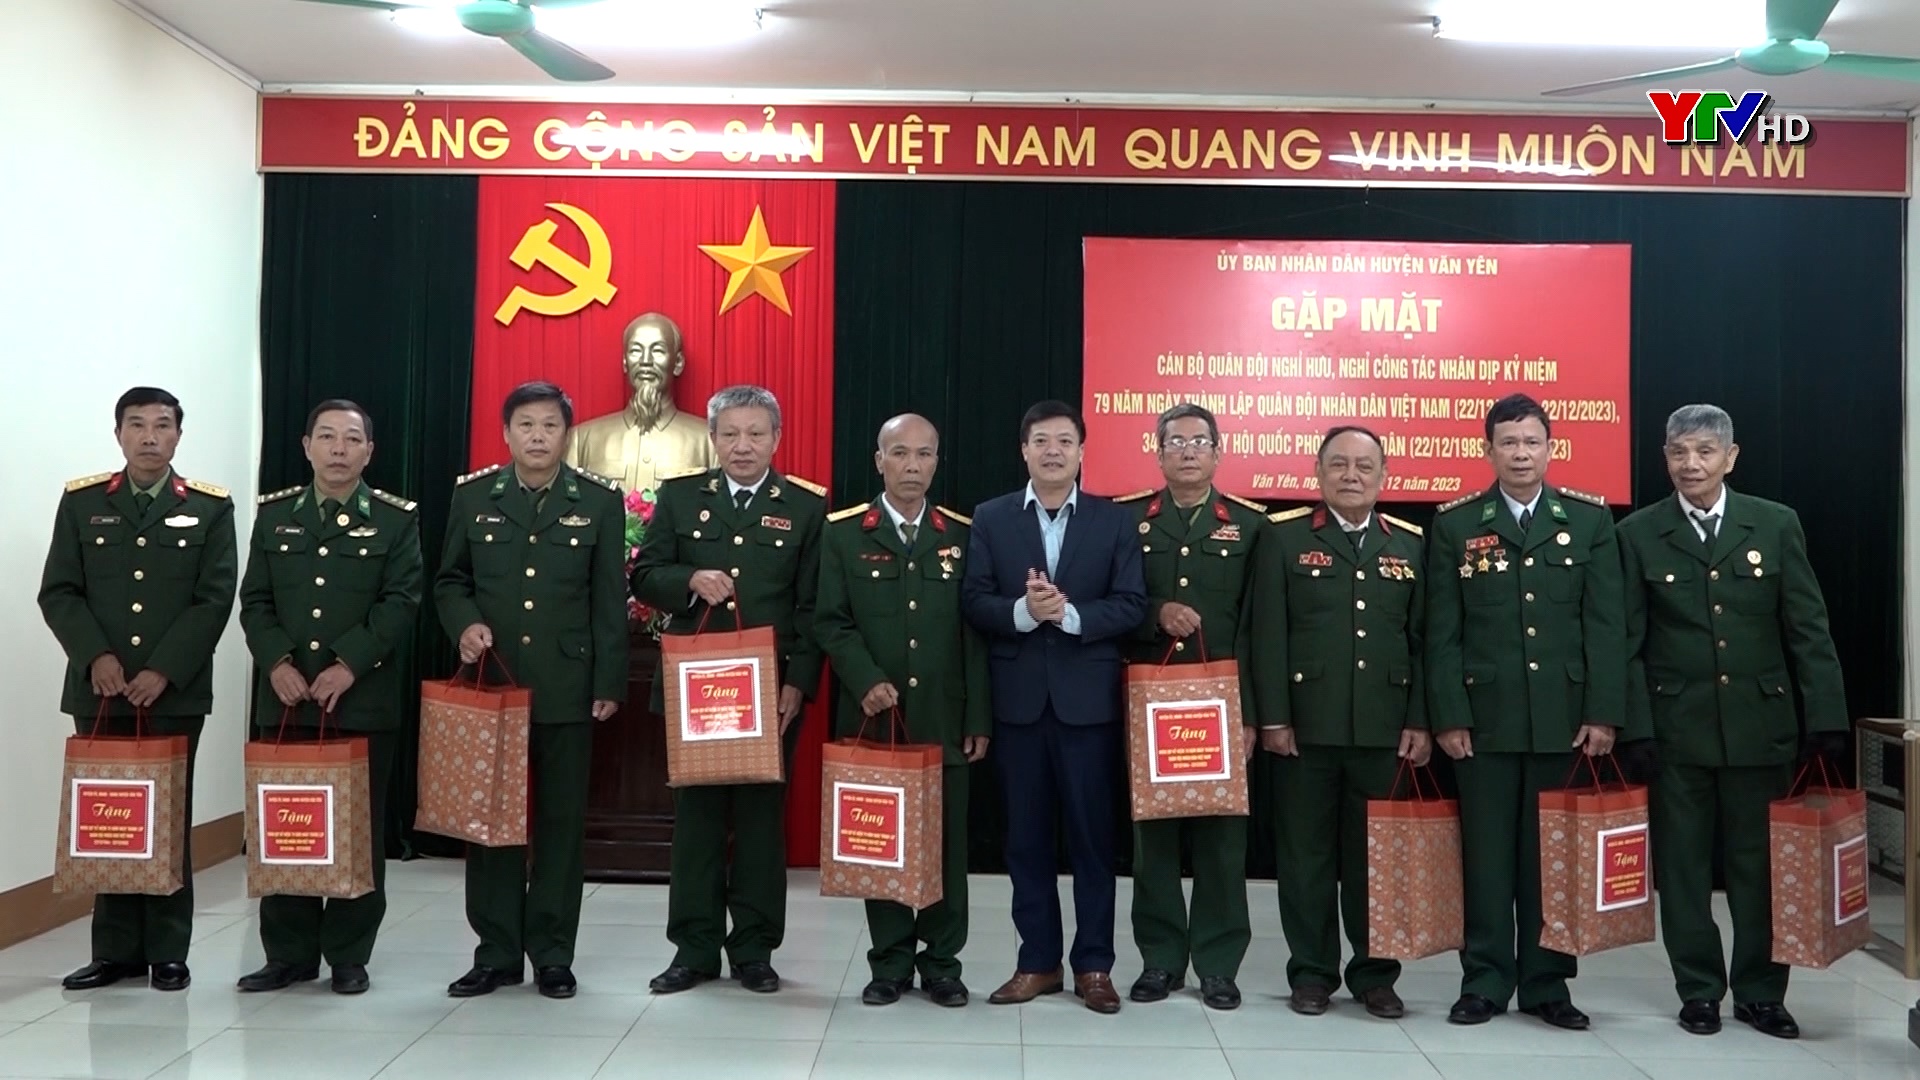 Huyện Văn Yên và Yên Bình tổ chức gặp mặt các cán bộ Quân đội đã nghỉ hưu, nghỉ công tác năm 2023